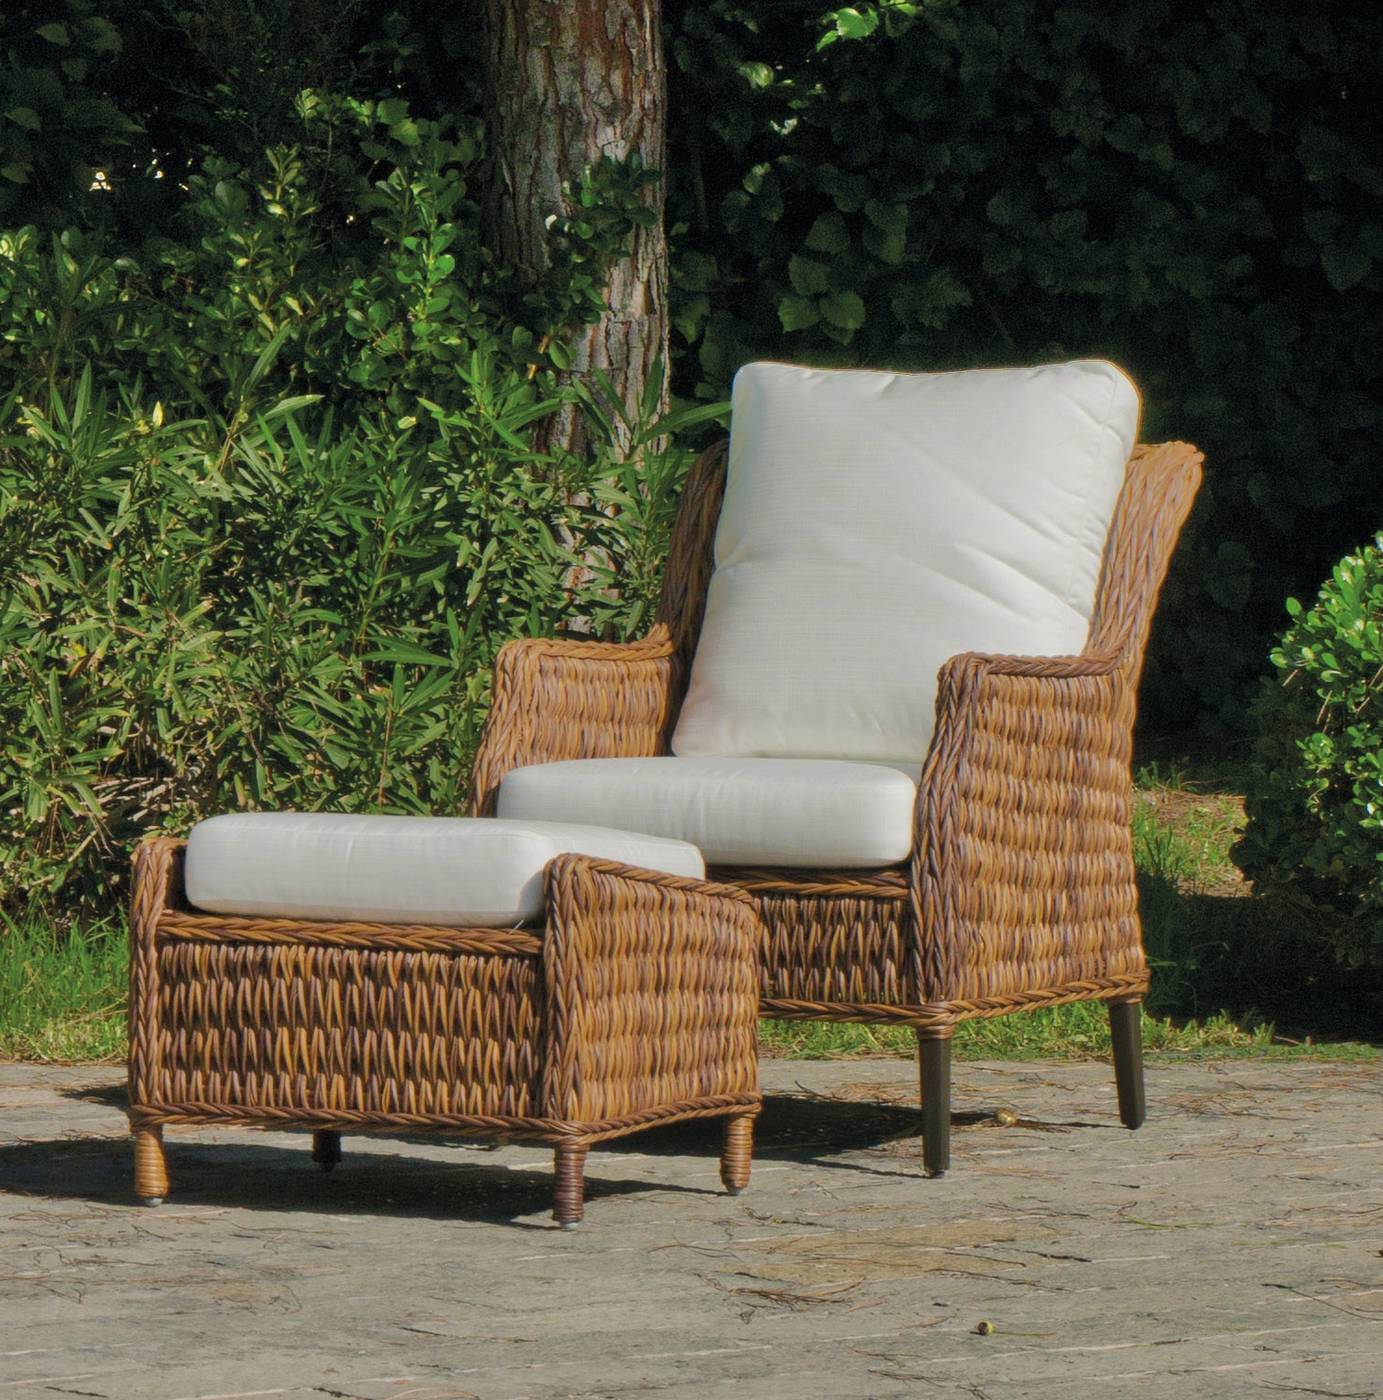 Set Médula Luxe Panama-7 - Conjunto de médula sintética lujo para jardín. Formado por: 1 sofá de 2 plazas + 2 sillones + 1 mesa de centro + cojines